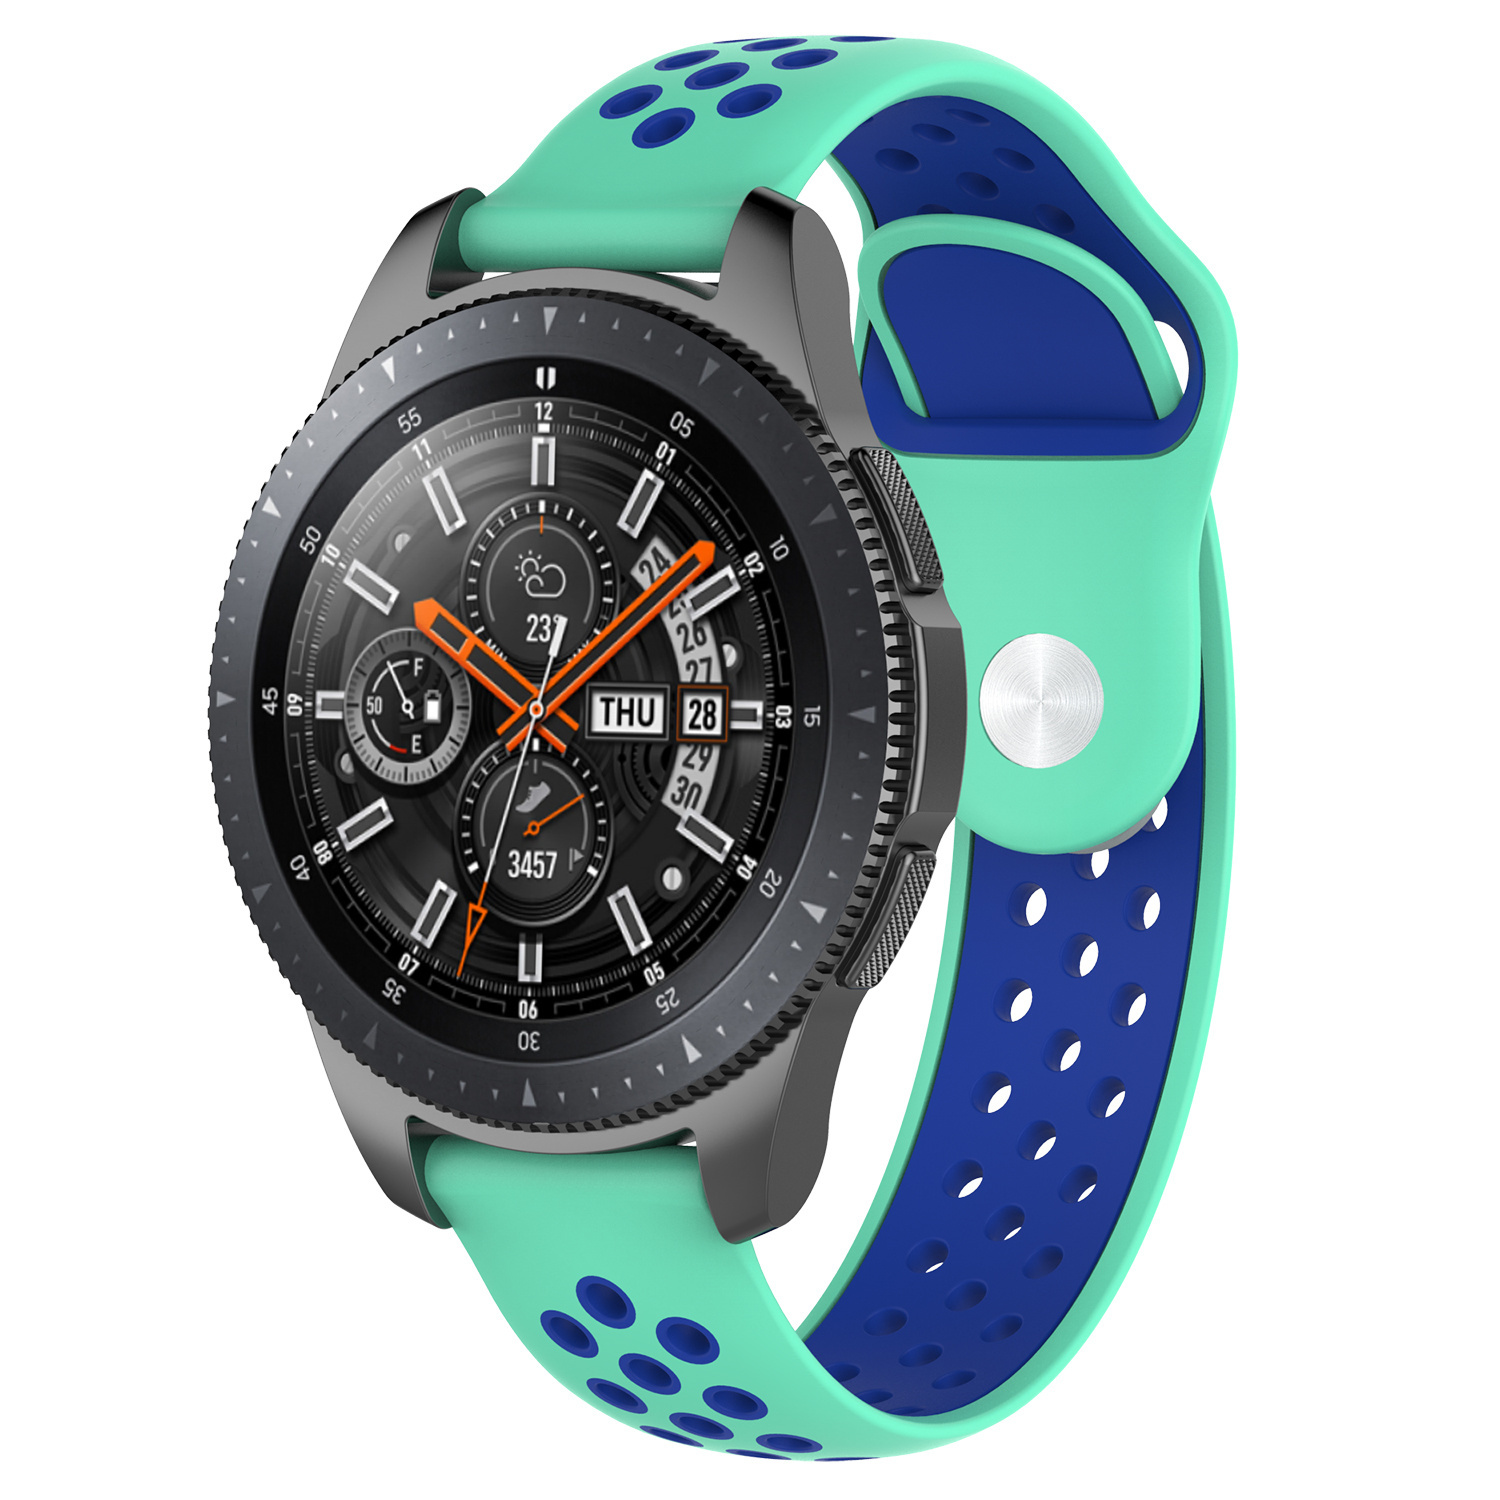 Correa deportiva doble para el Samsung Galaxy Watch - azul turquesa